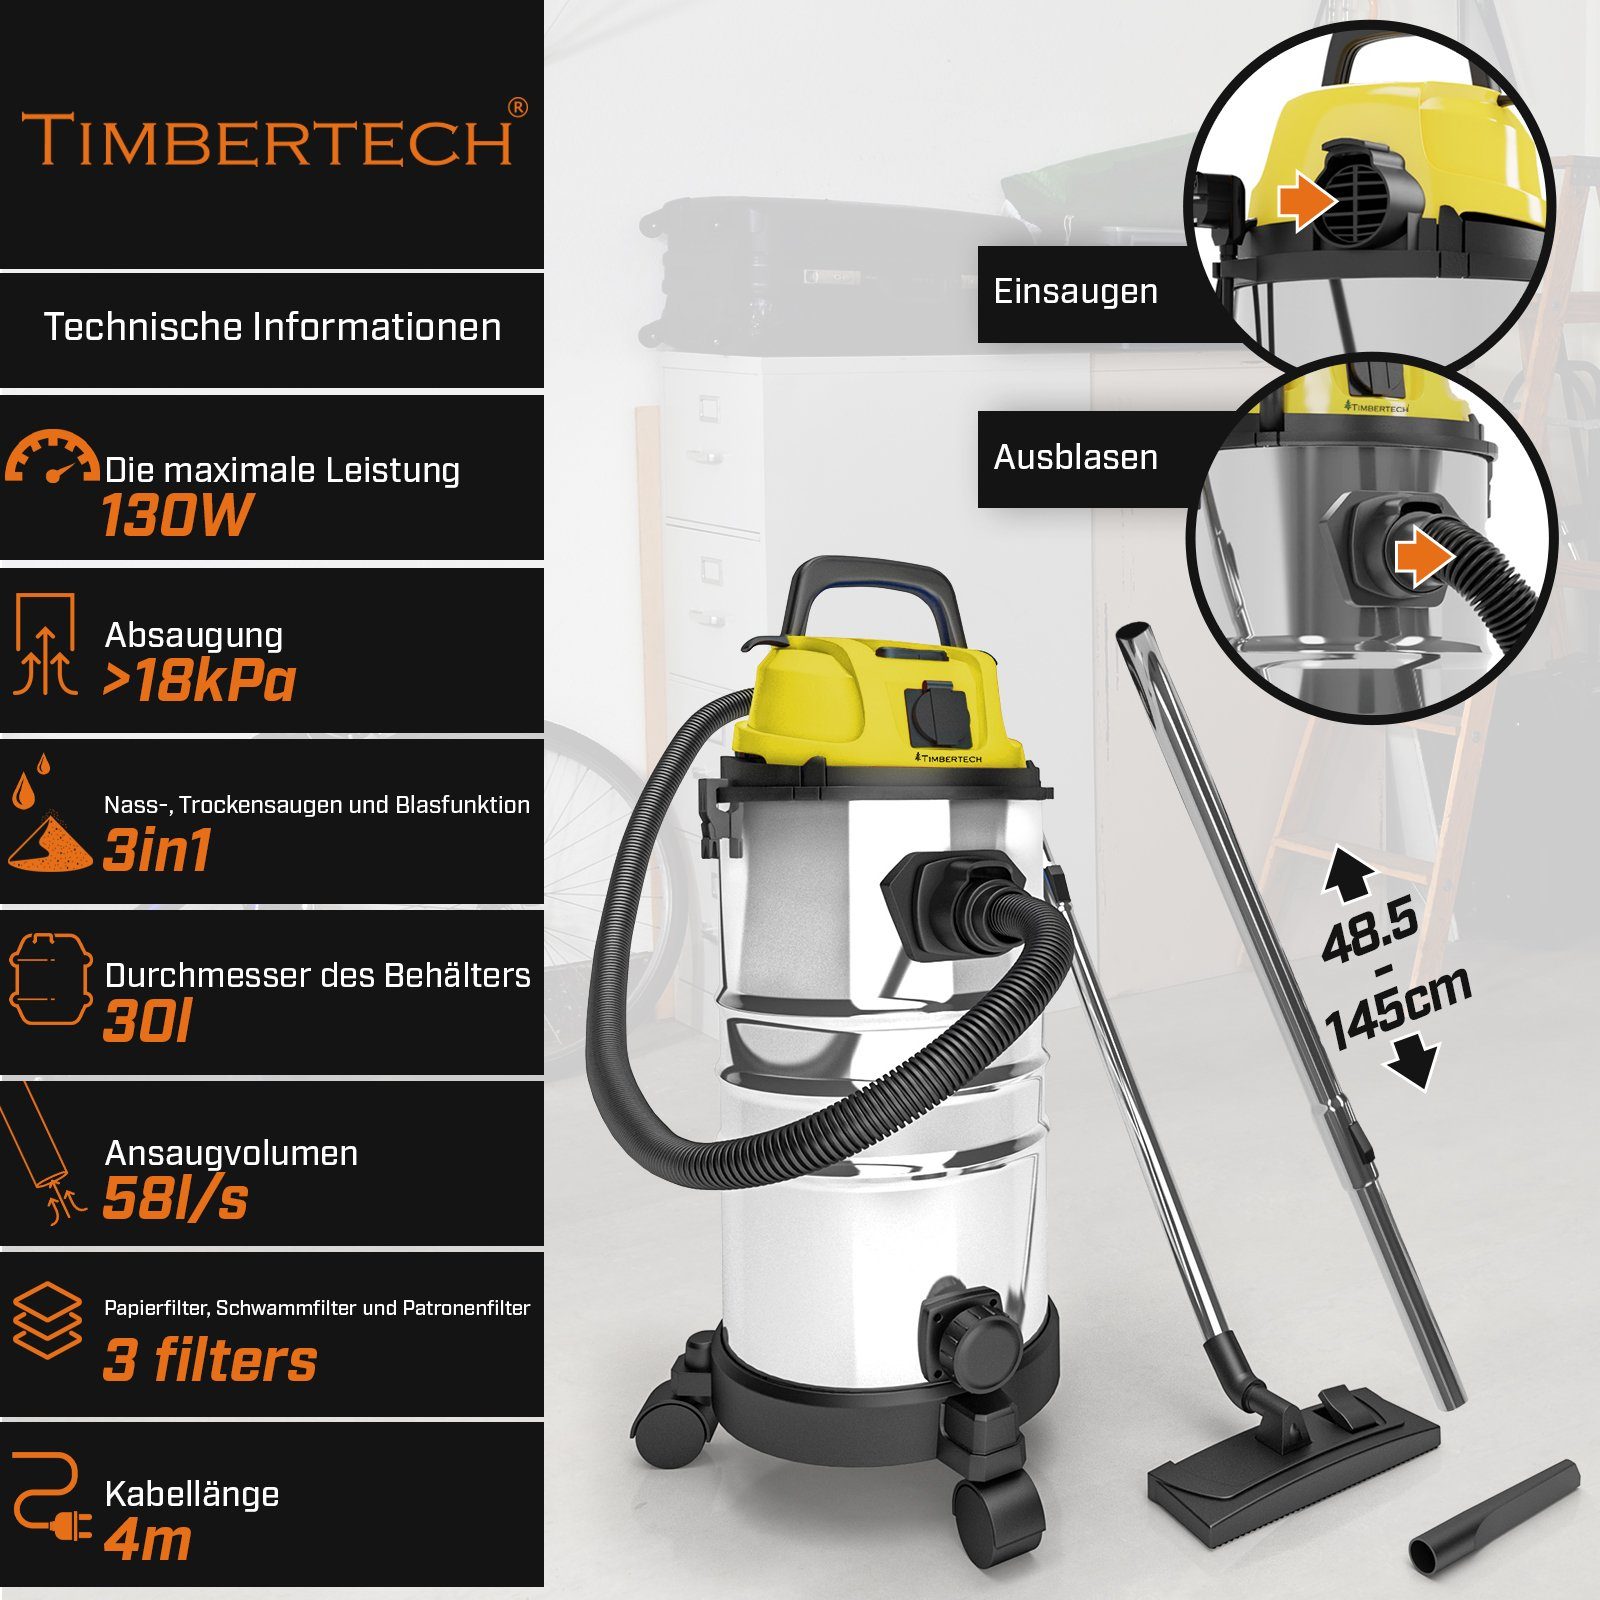 TIMBERTECH Industriesauger Industriestaubsauger -2300 W Leistung, mit Filter Blasfunktion, Gelb 30L, 3